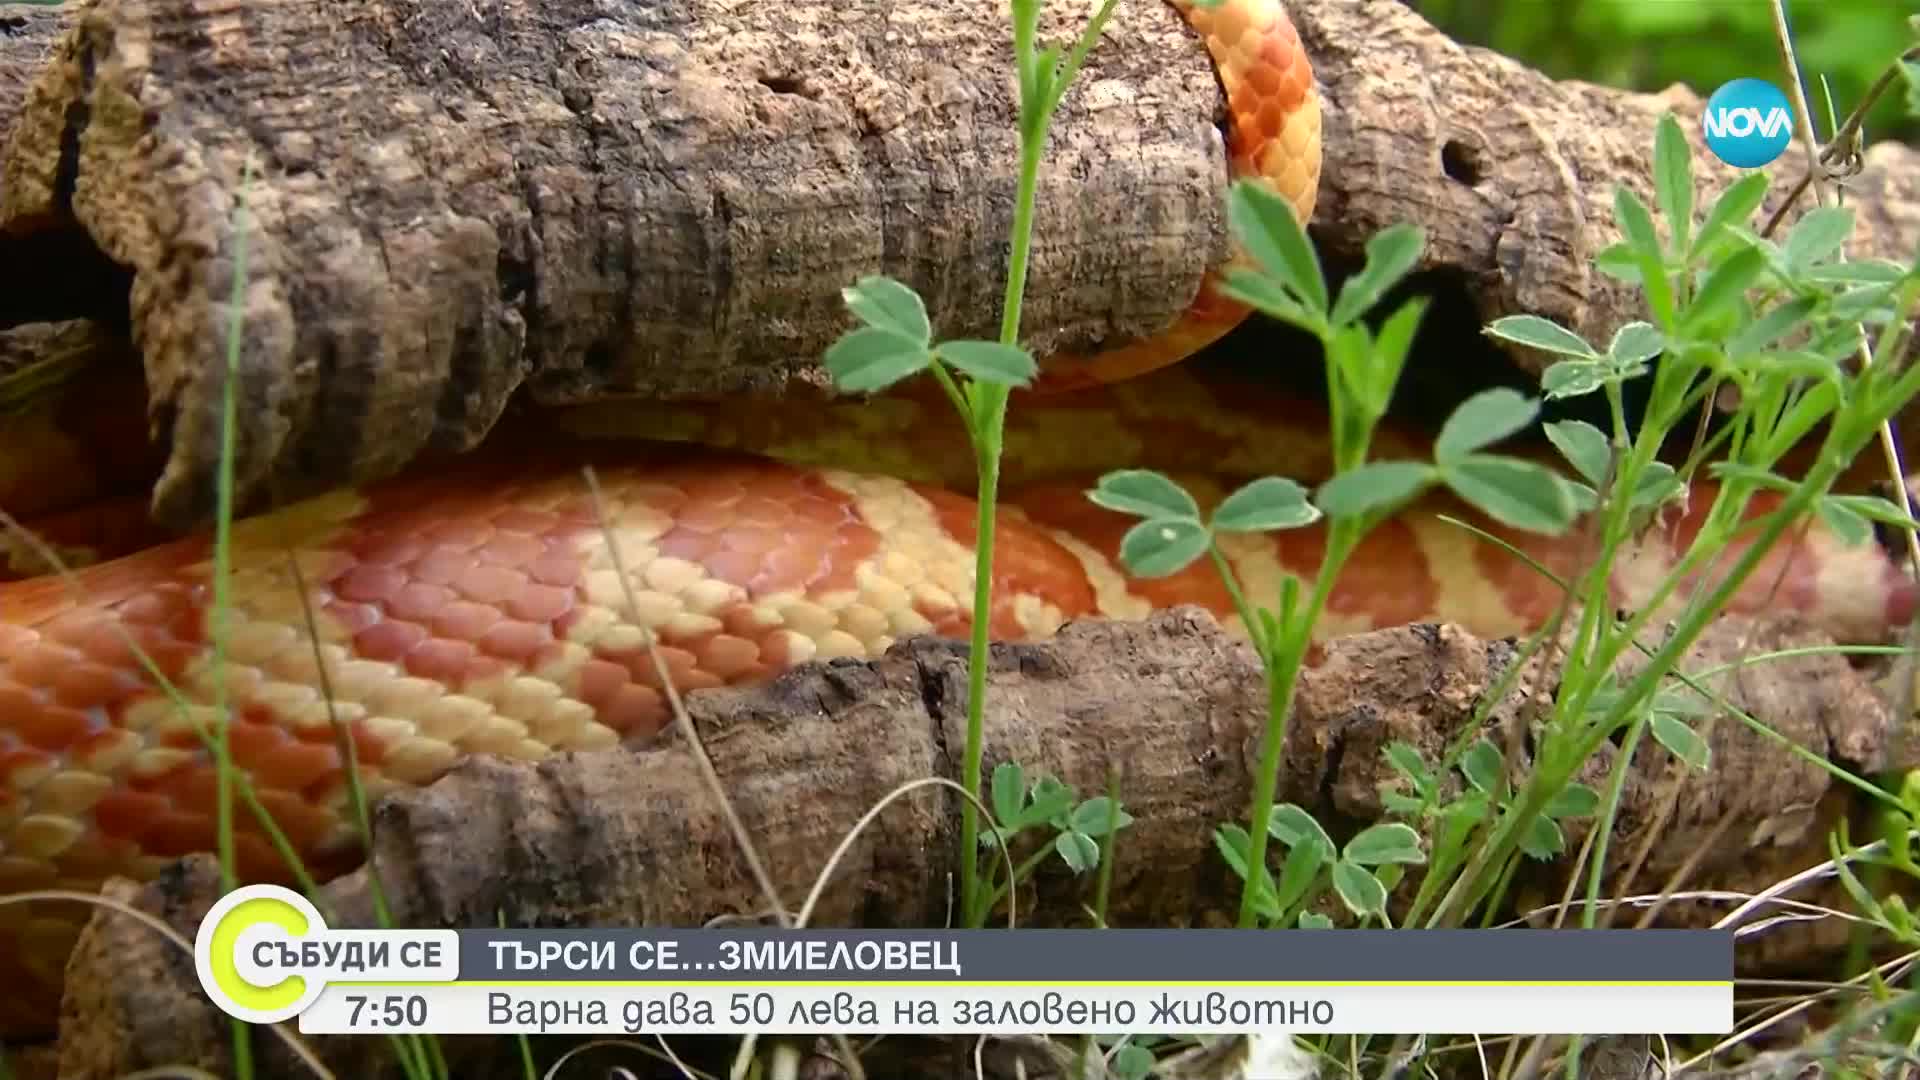 ТЪРСИ СЕ: Община Варна иска да назначи професионален ловец на змии